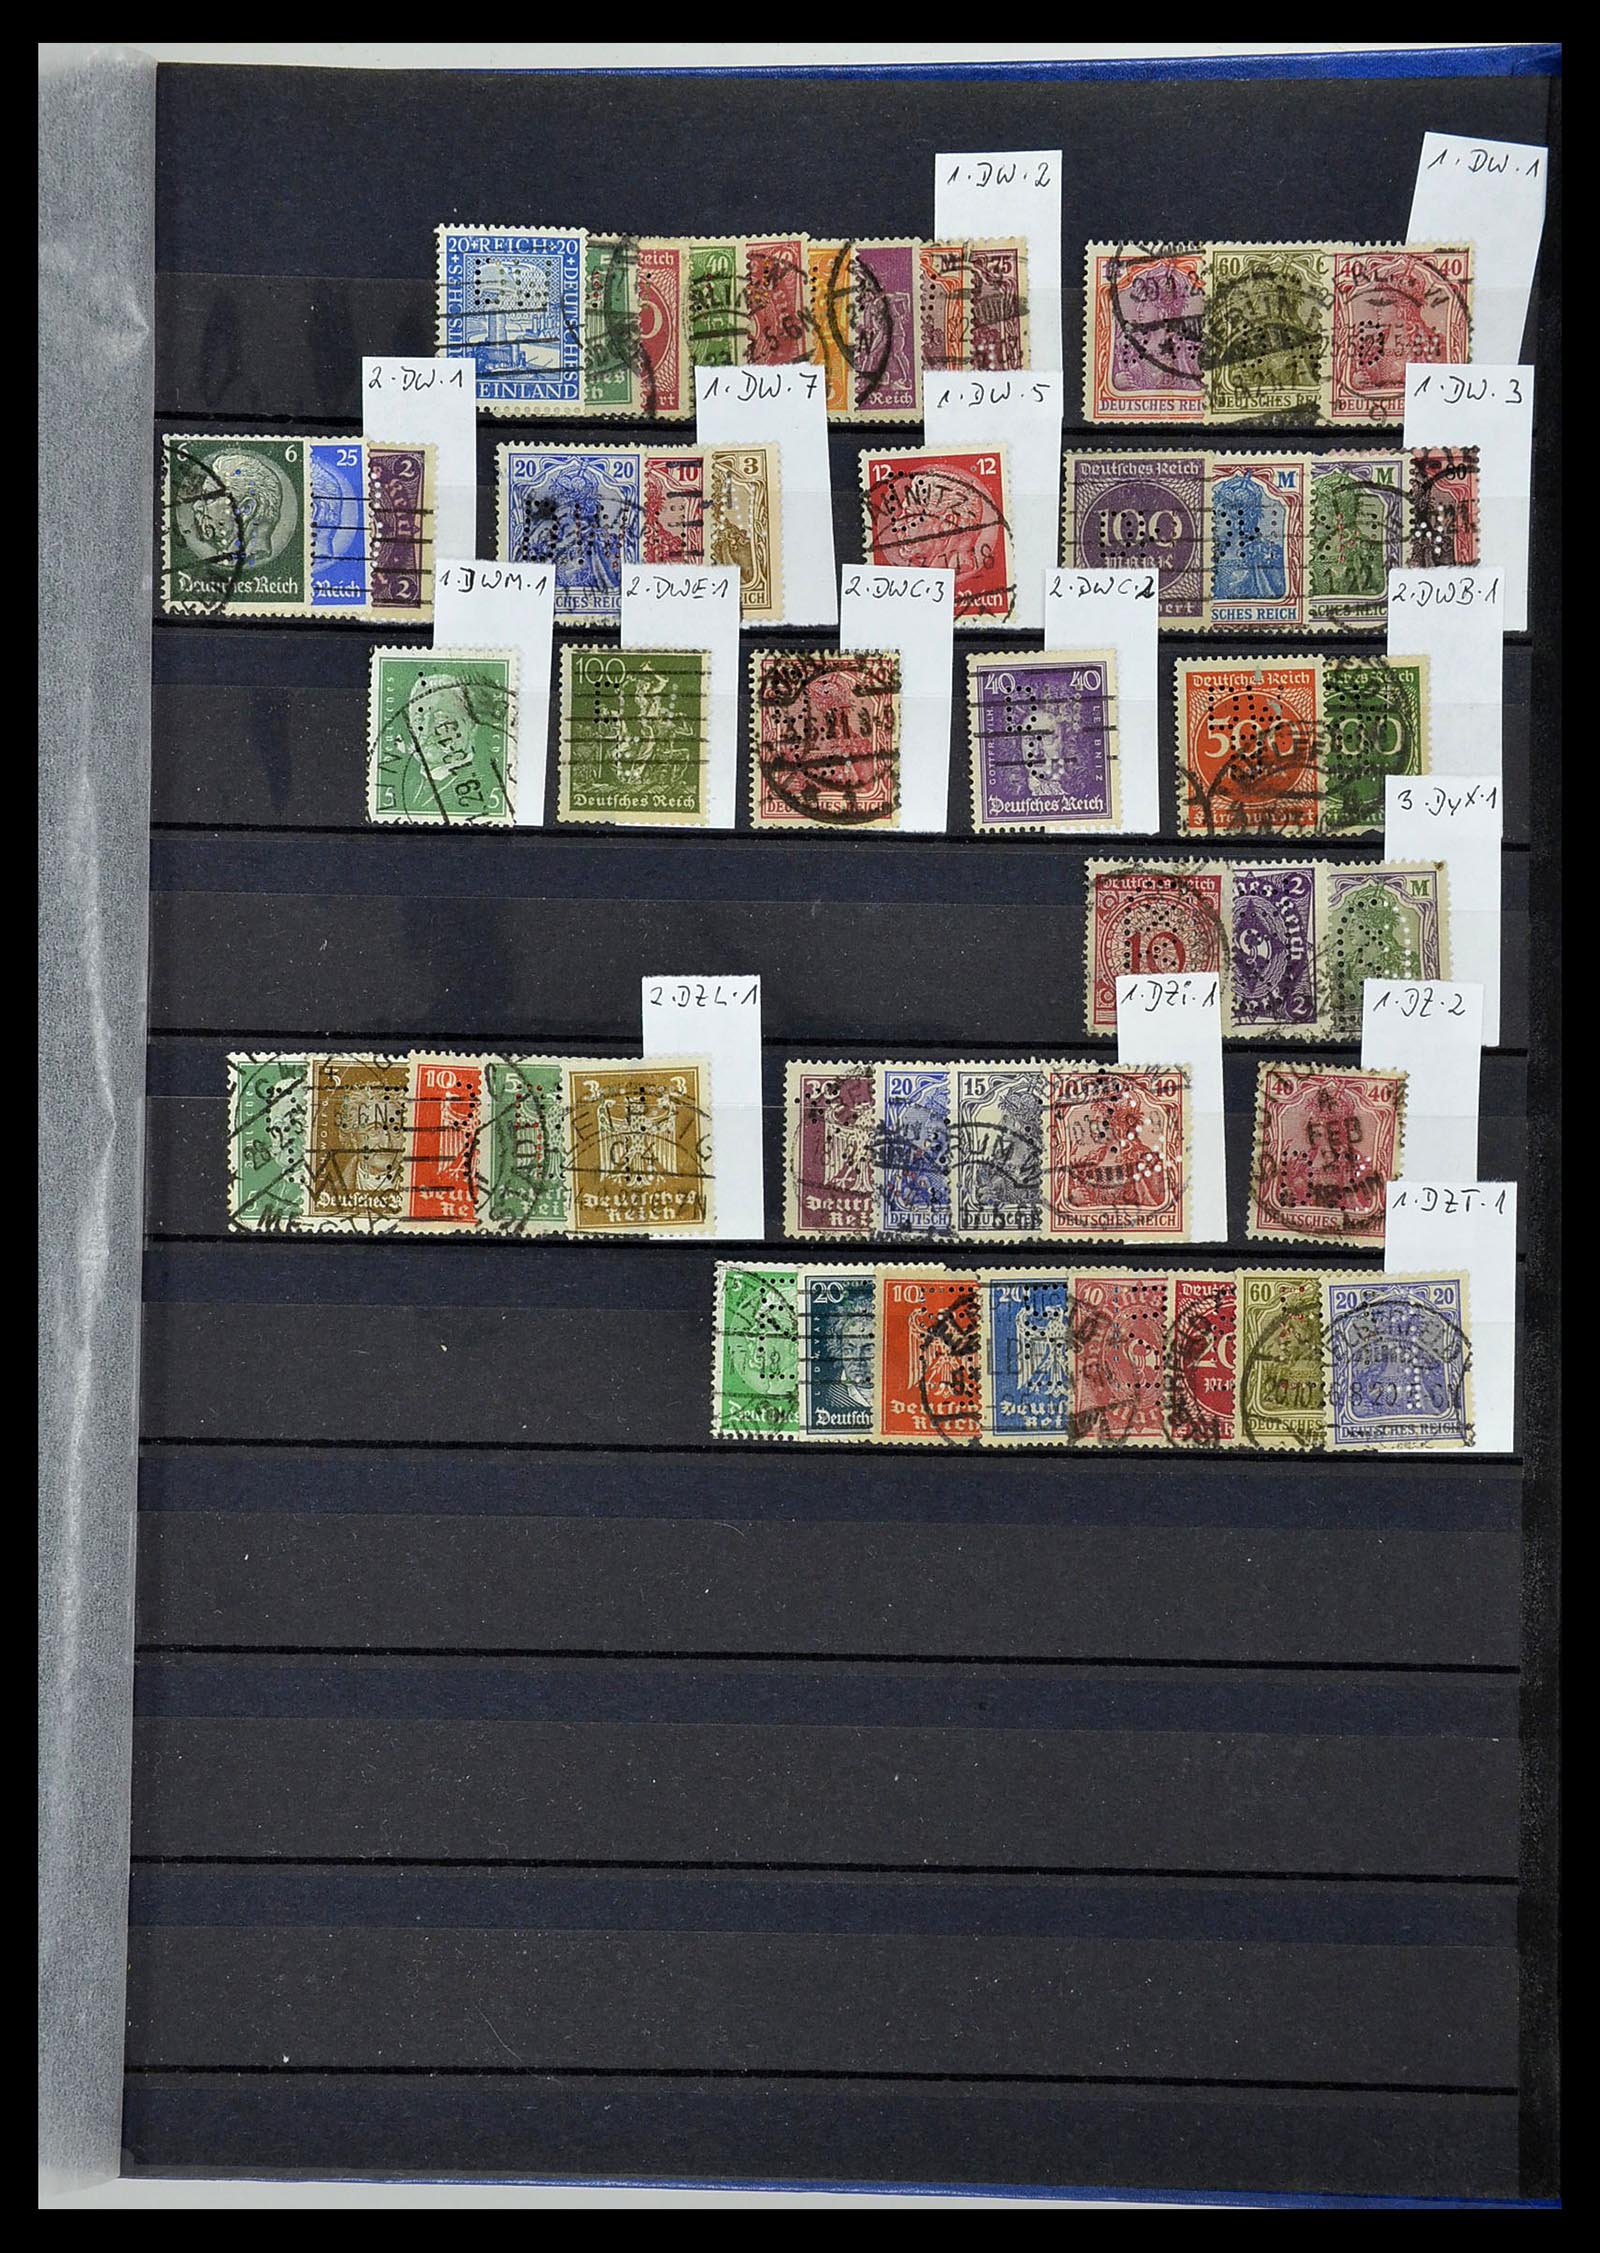 34432 106 - Stamp Collection 34432 German Reich perfins 1900-1933.